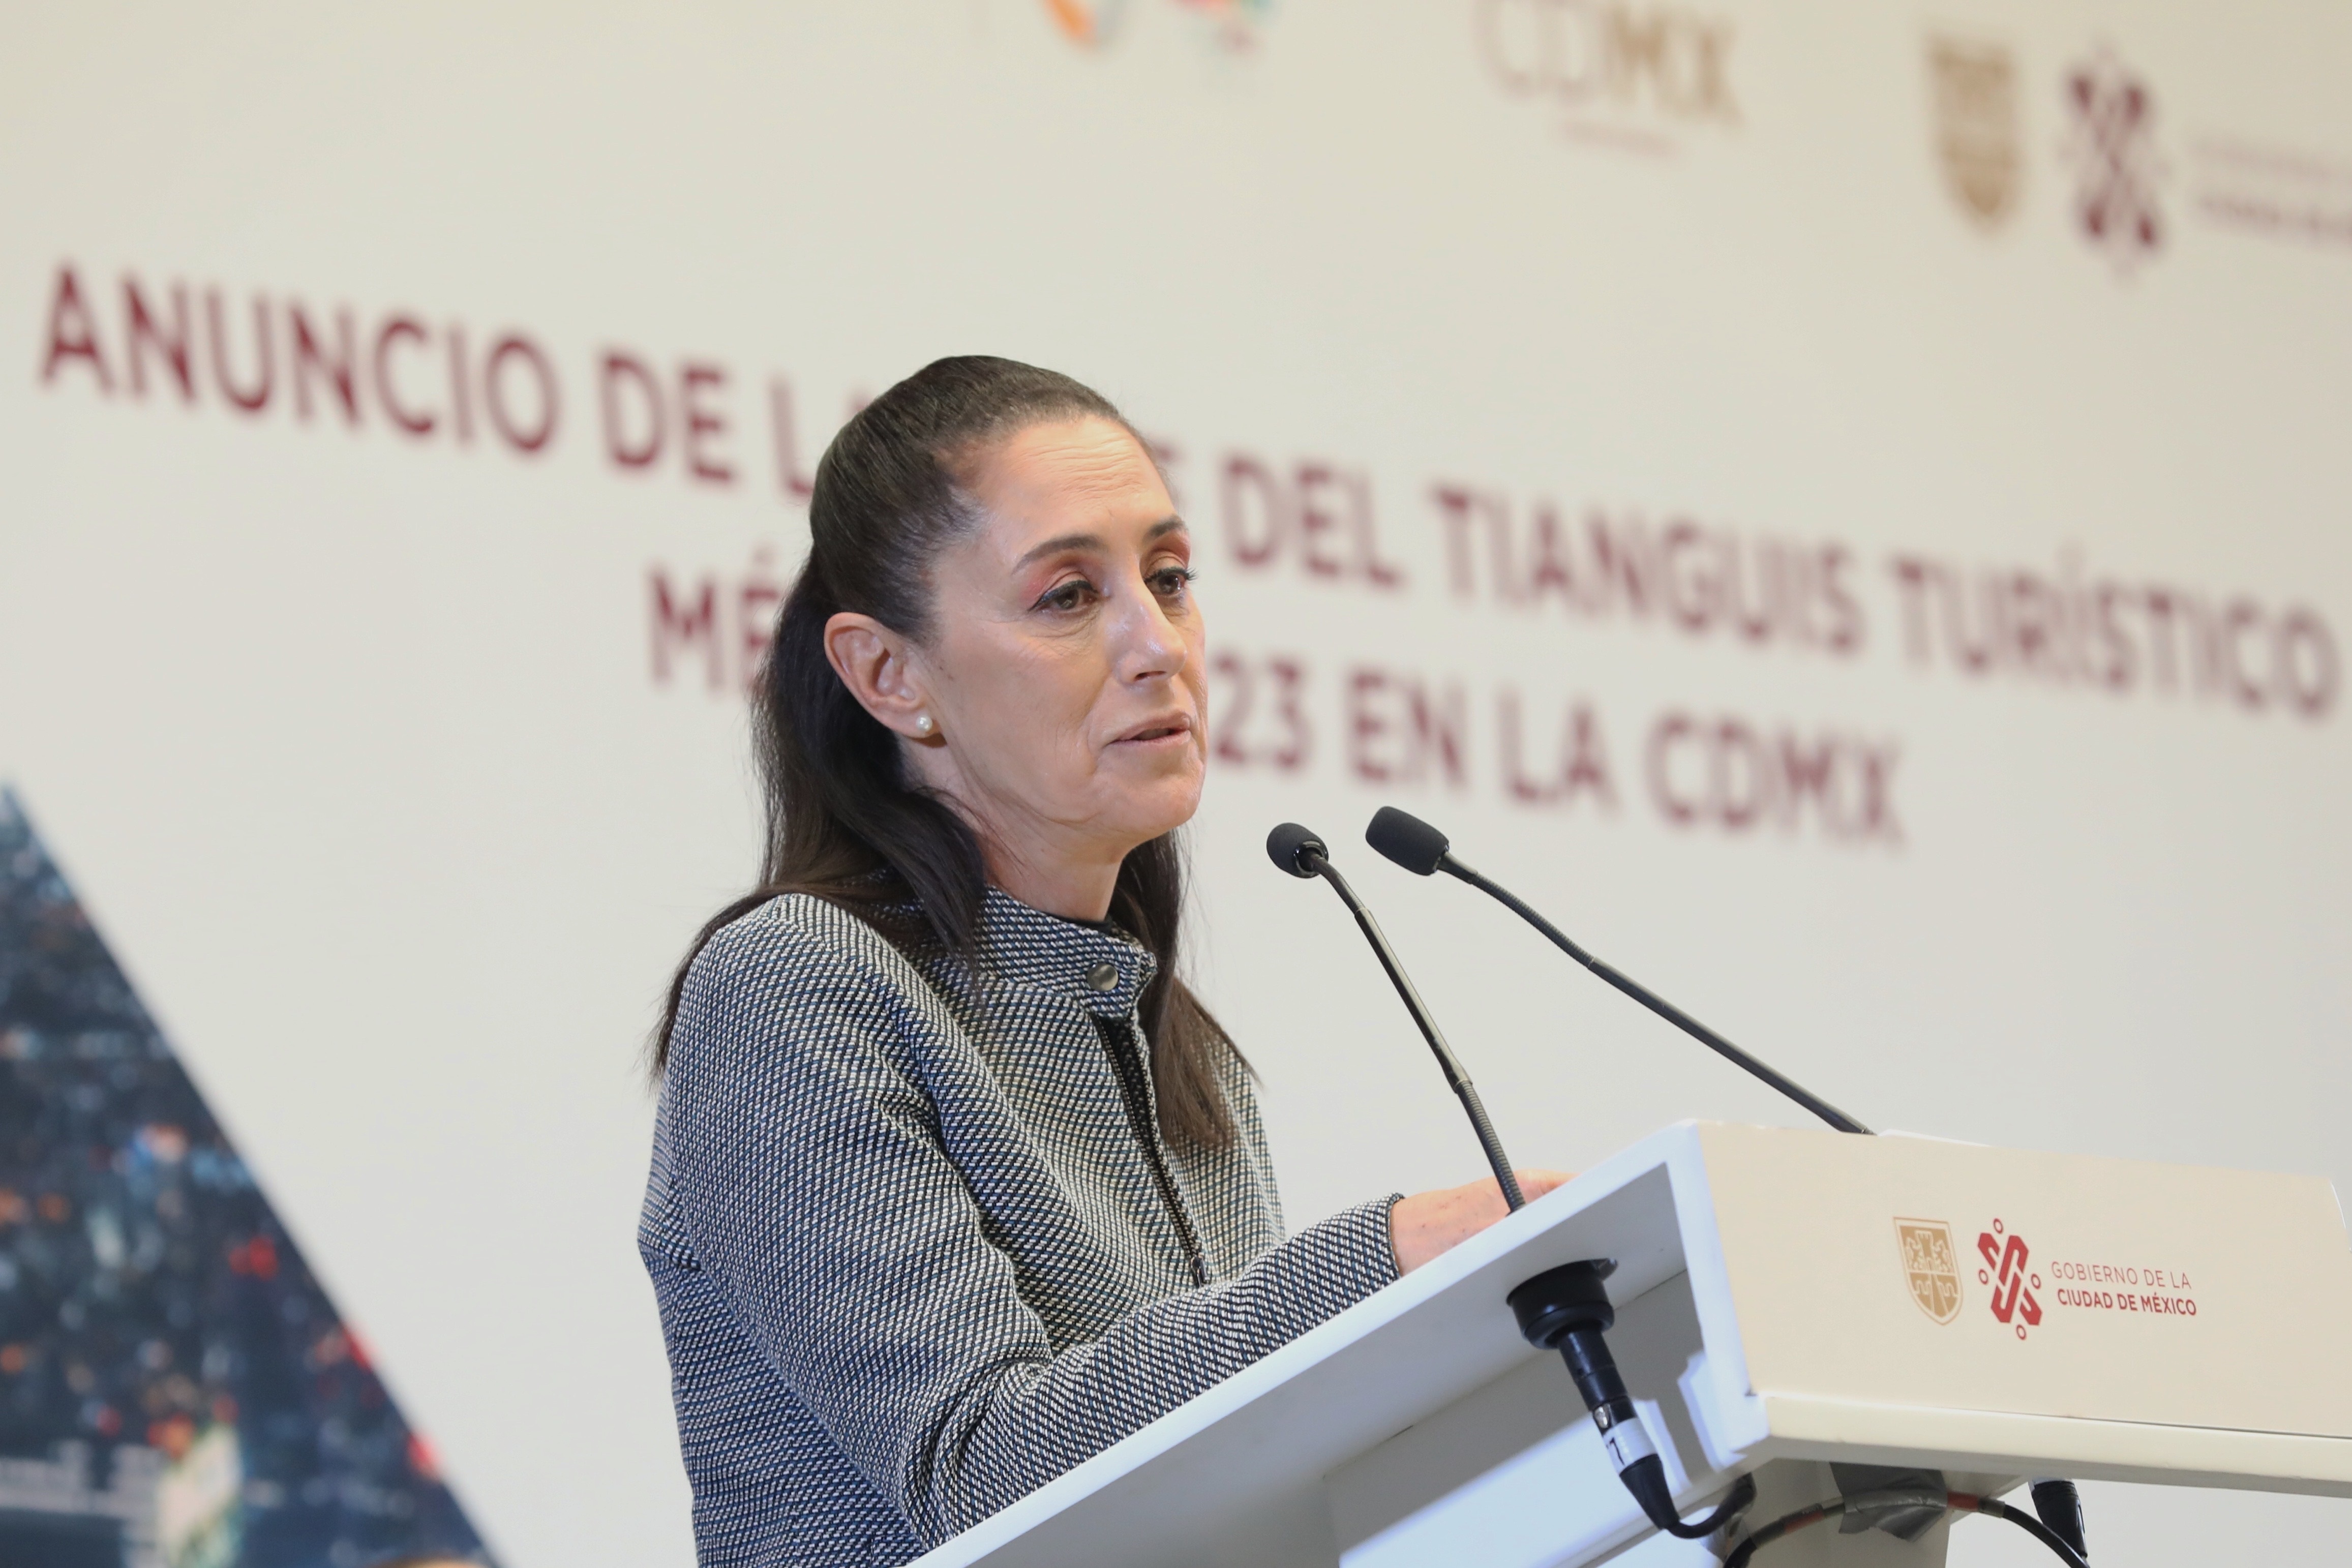 La mandataria local refrendó su compromiso de ofrecer educación pública de calidad a los residentes de la capital (Foto: EFE/ Sáshenka Gutiérrez)
